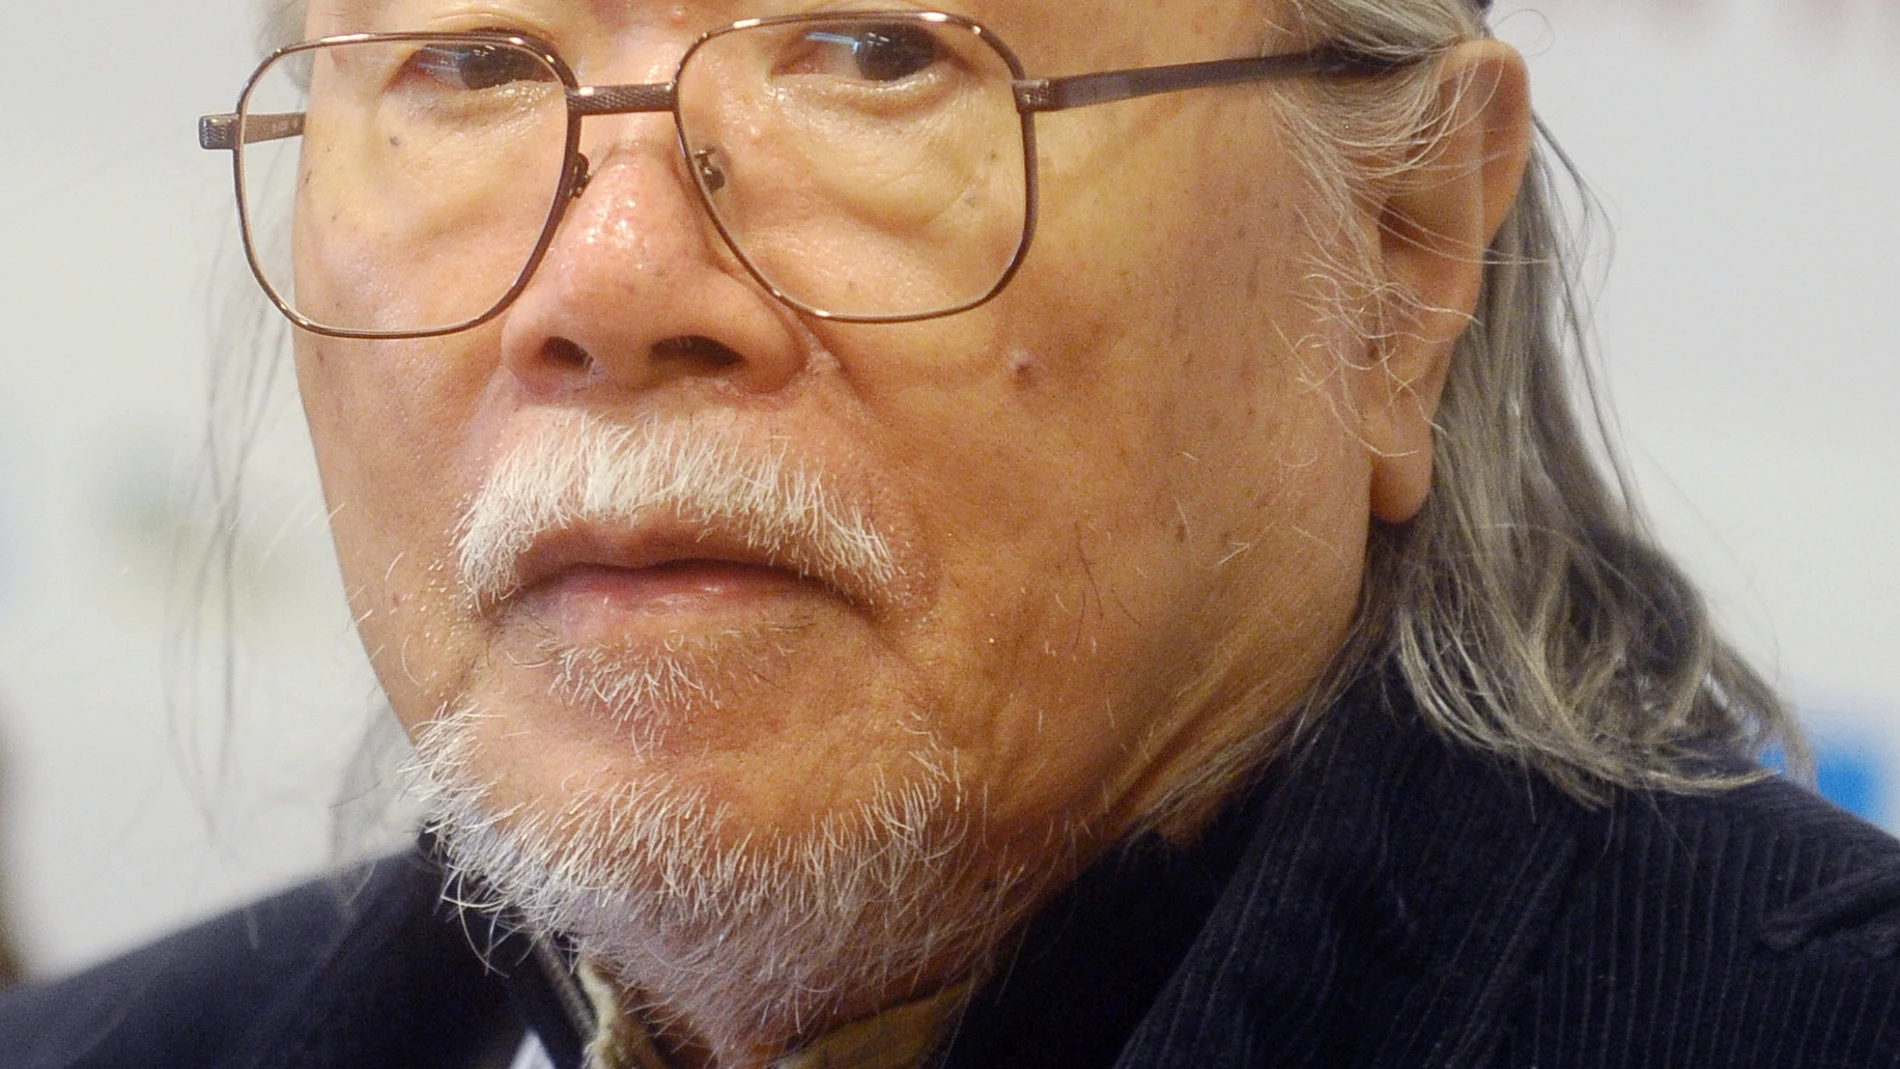 Muere a los 85 años Leiji Matsumoto, autor del manga "Capitán Harlock"